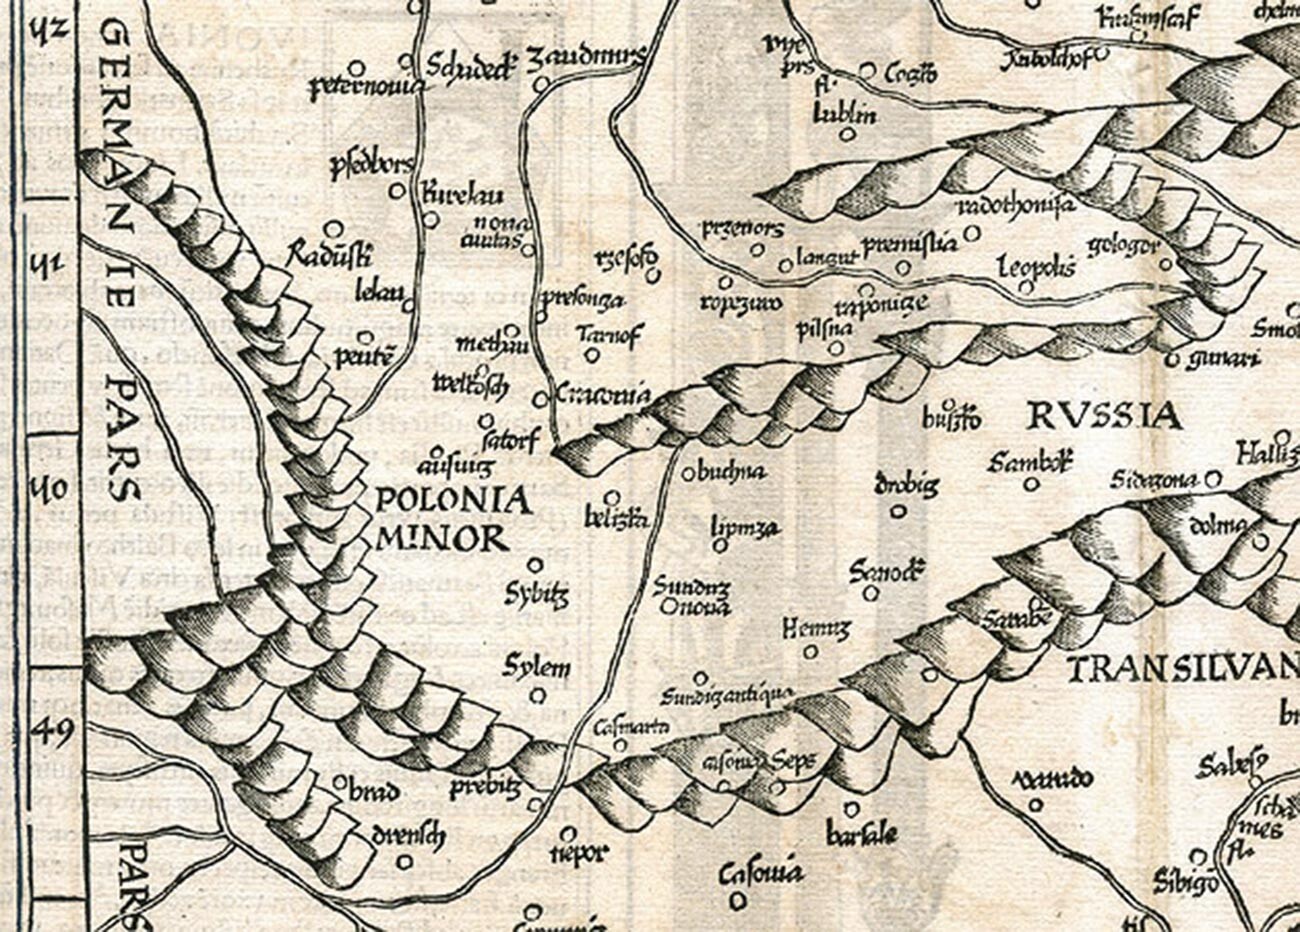 Die Karte von Kleinpolen und Rotruthenien von Martin Waldseemüller, 1507.